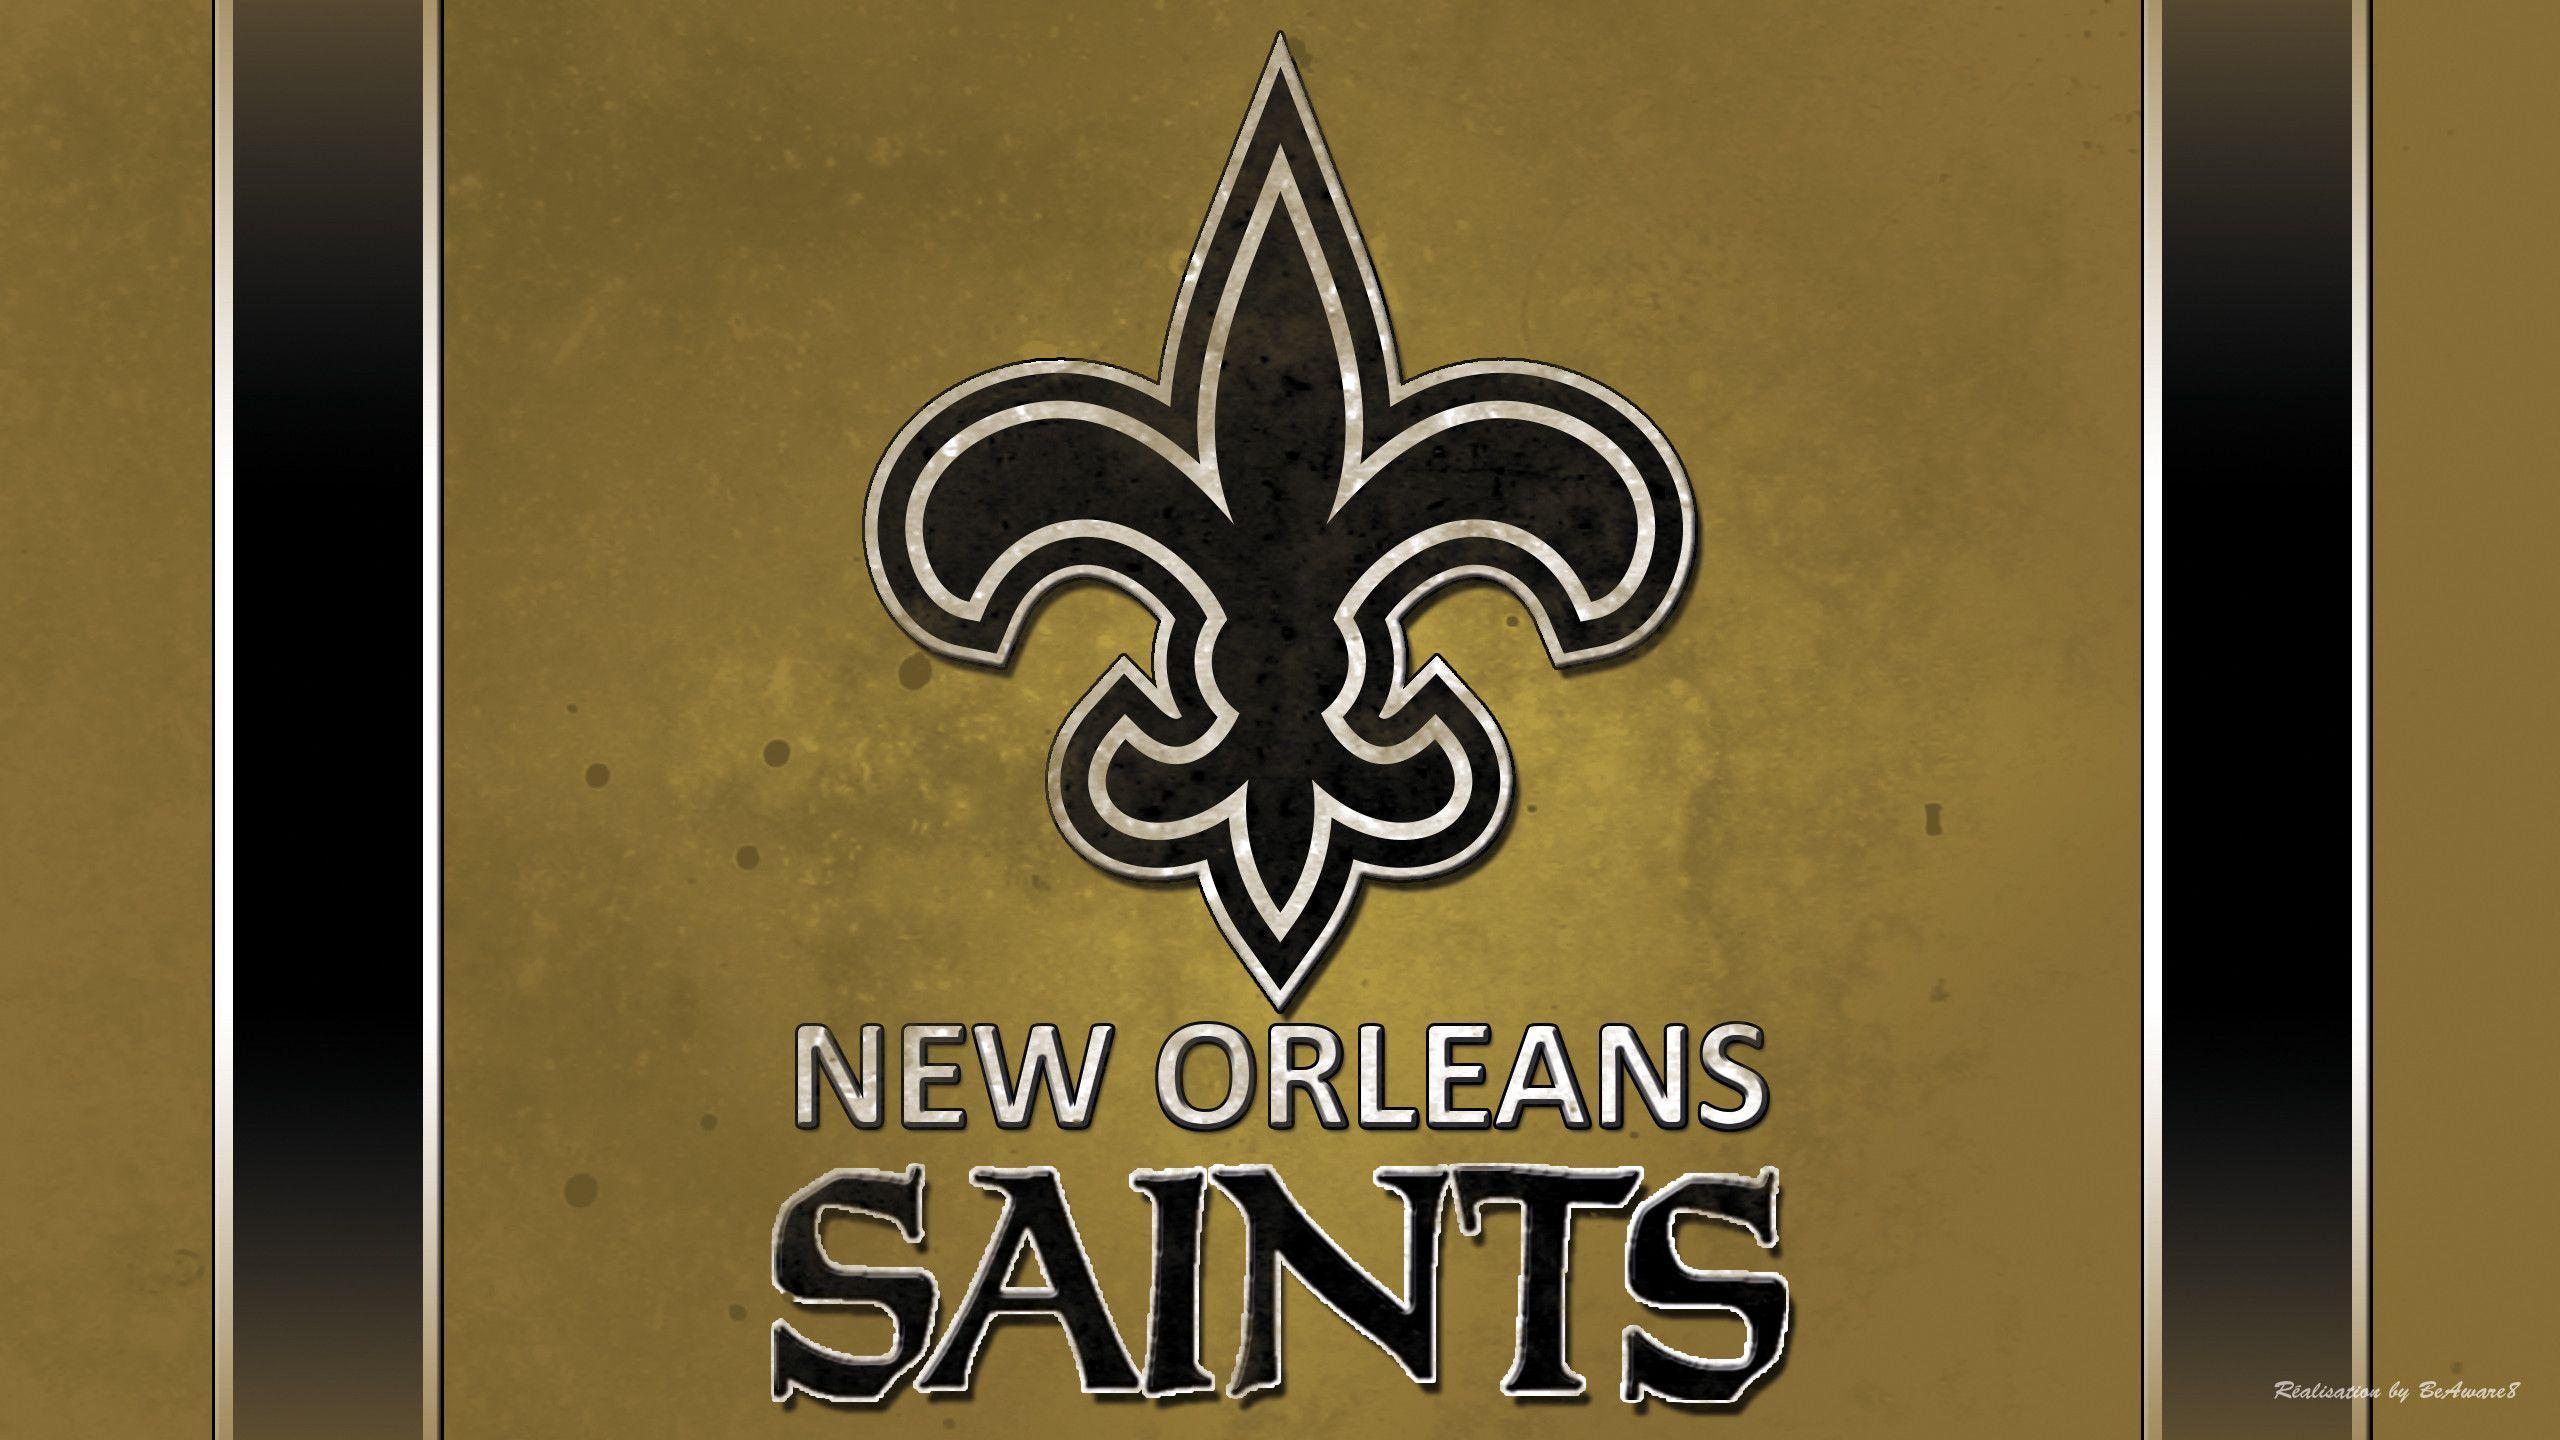 New Orleans Saints 2014 2015 Schedule